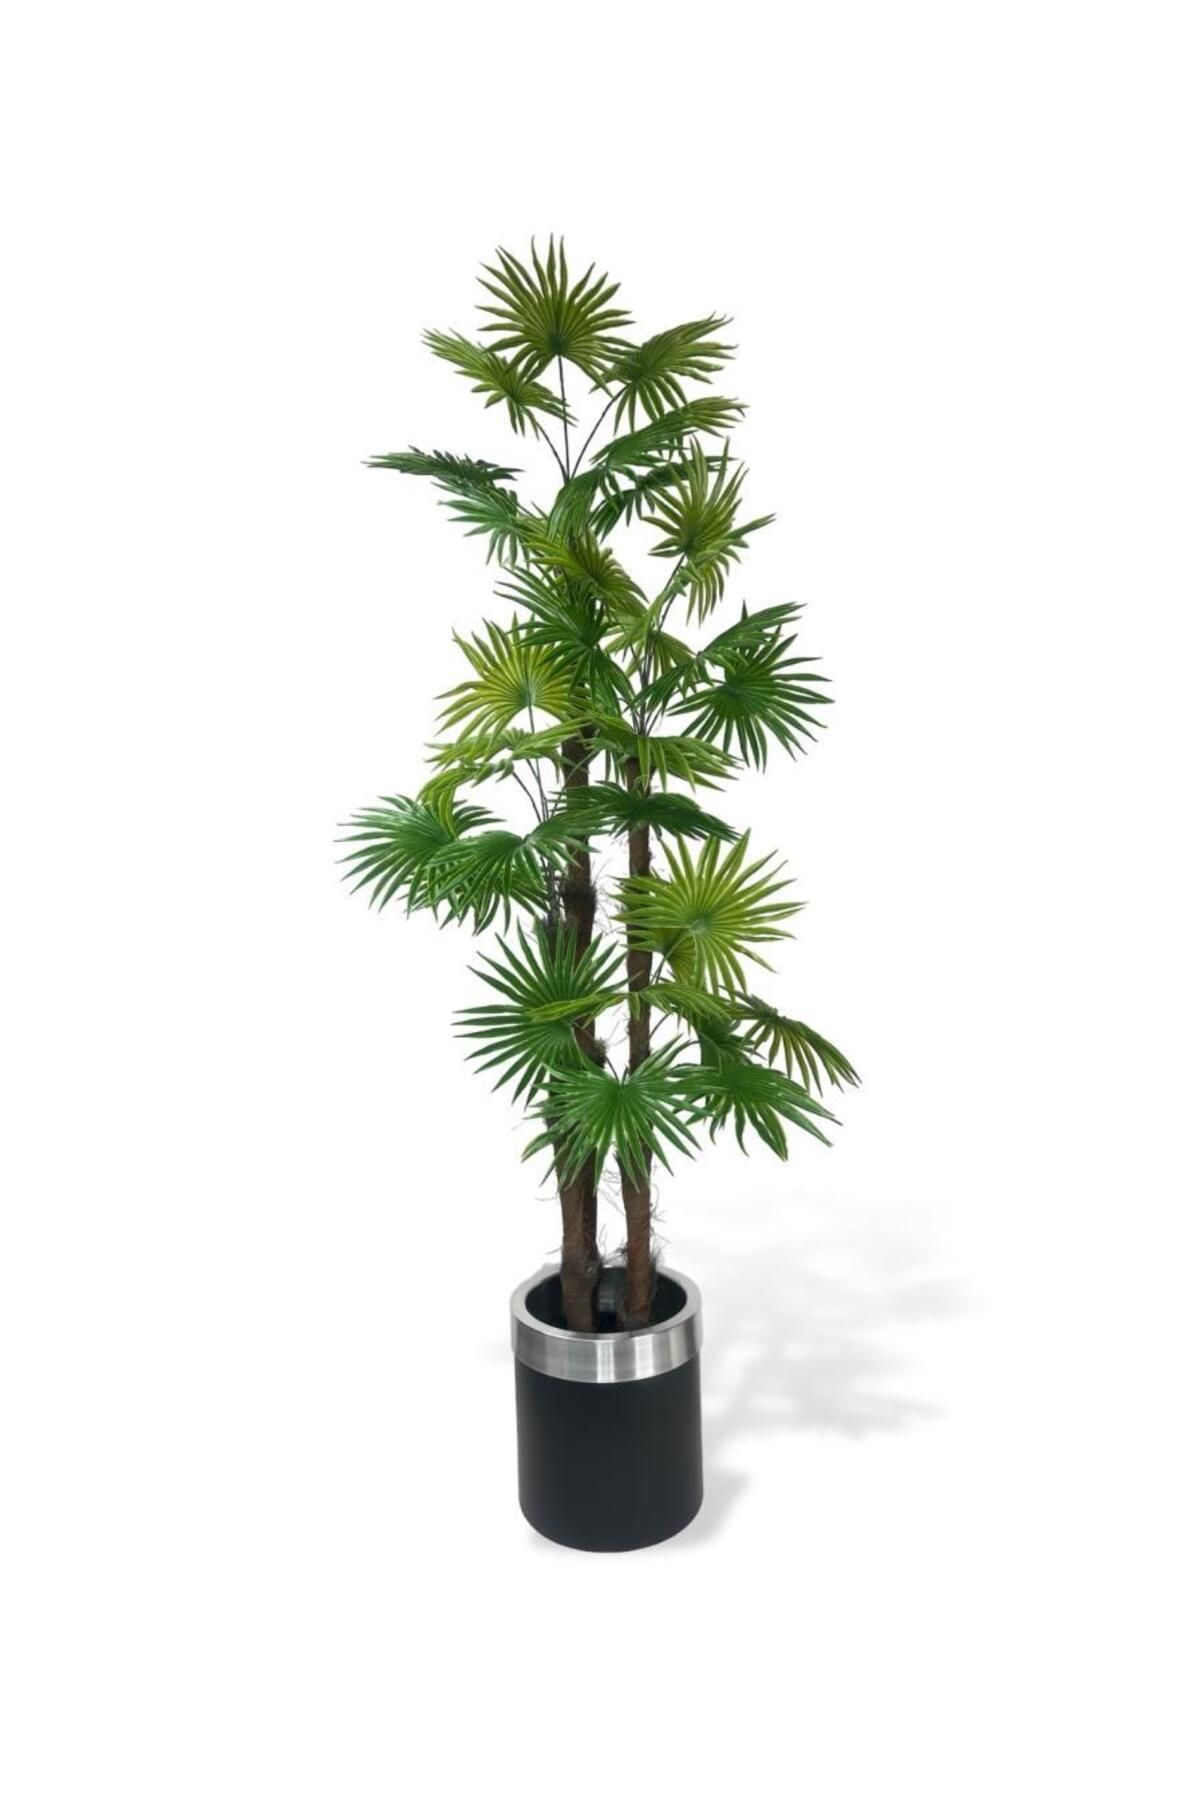 Nettenevime Yapay Ağaç Yelpaze Palmiye 4Katlı Fanpalm 32 Yaprak Gümüş Kemerli Siyah Saksıda 170*65cm